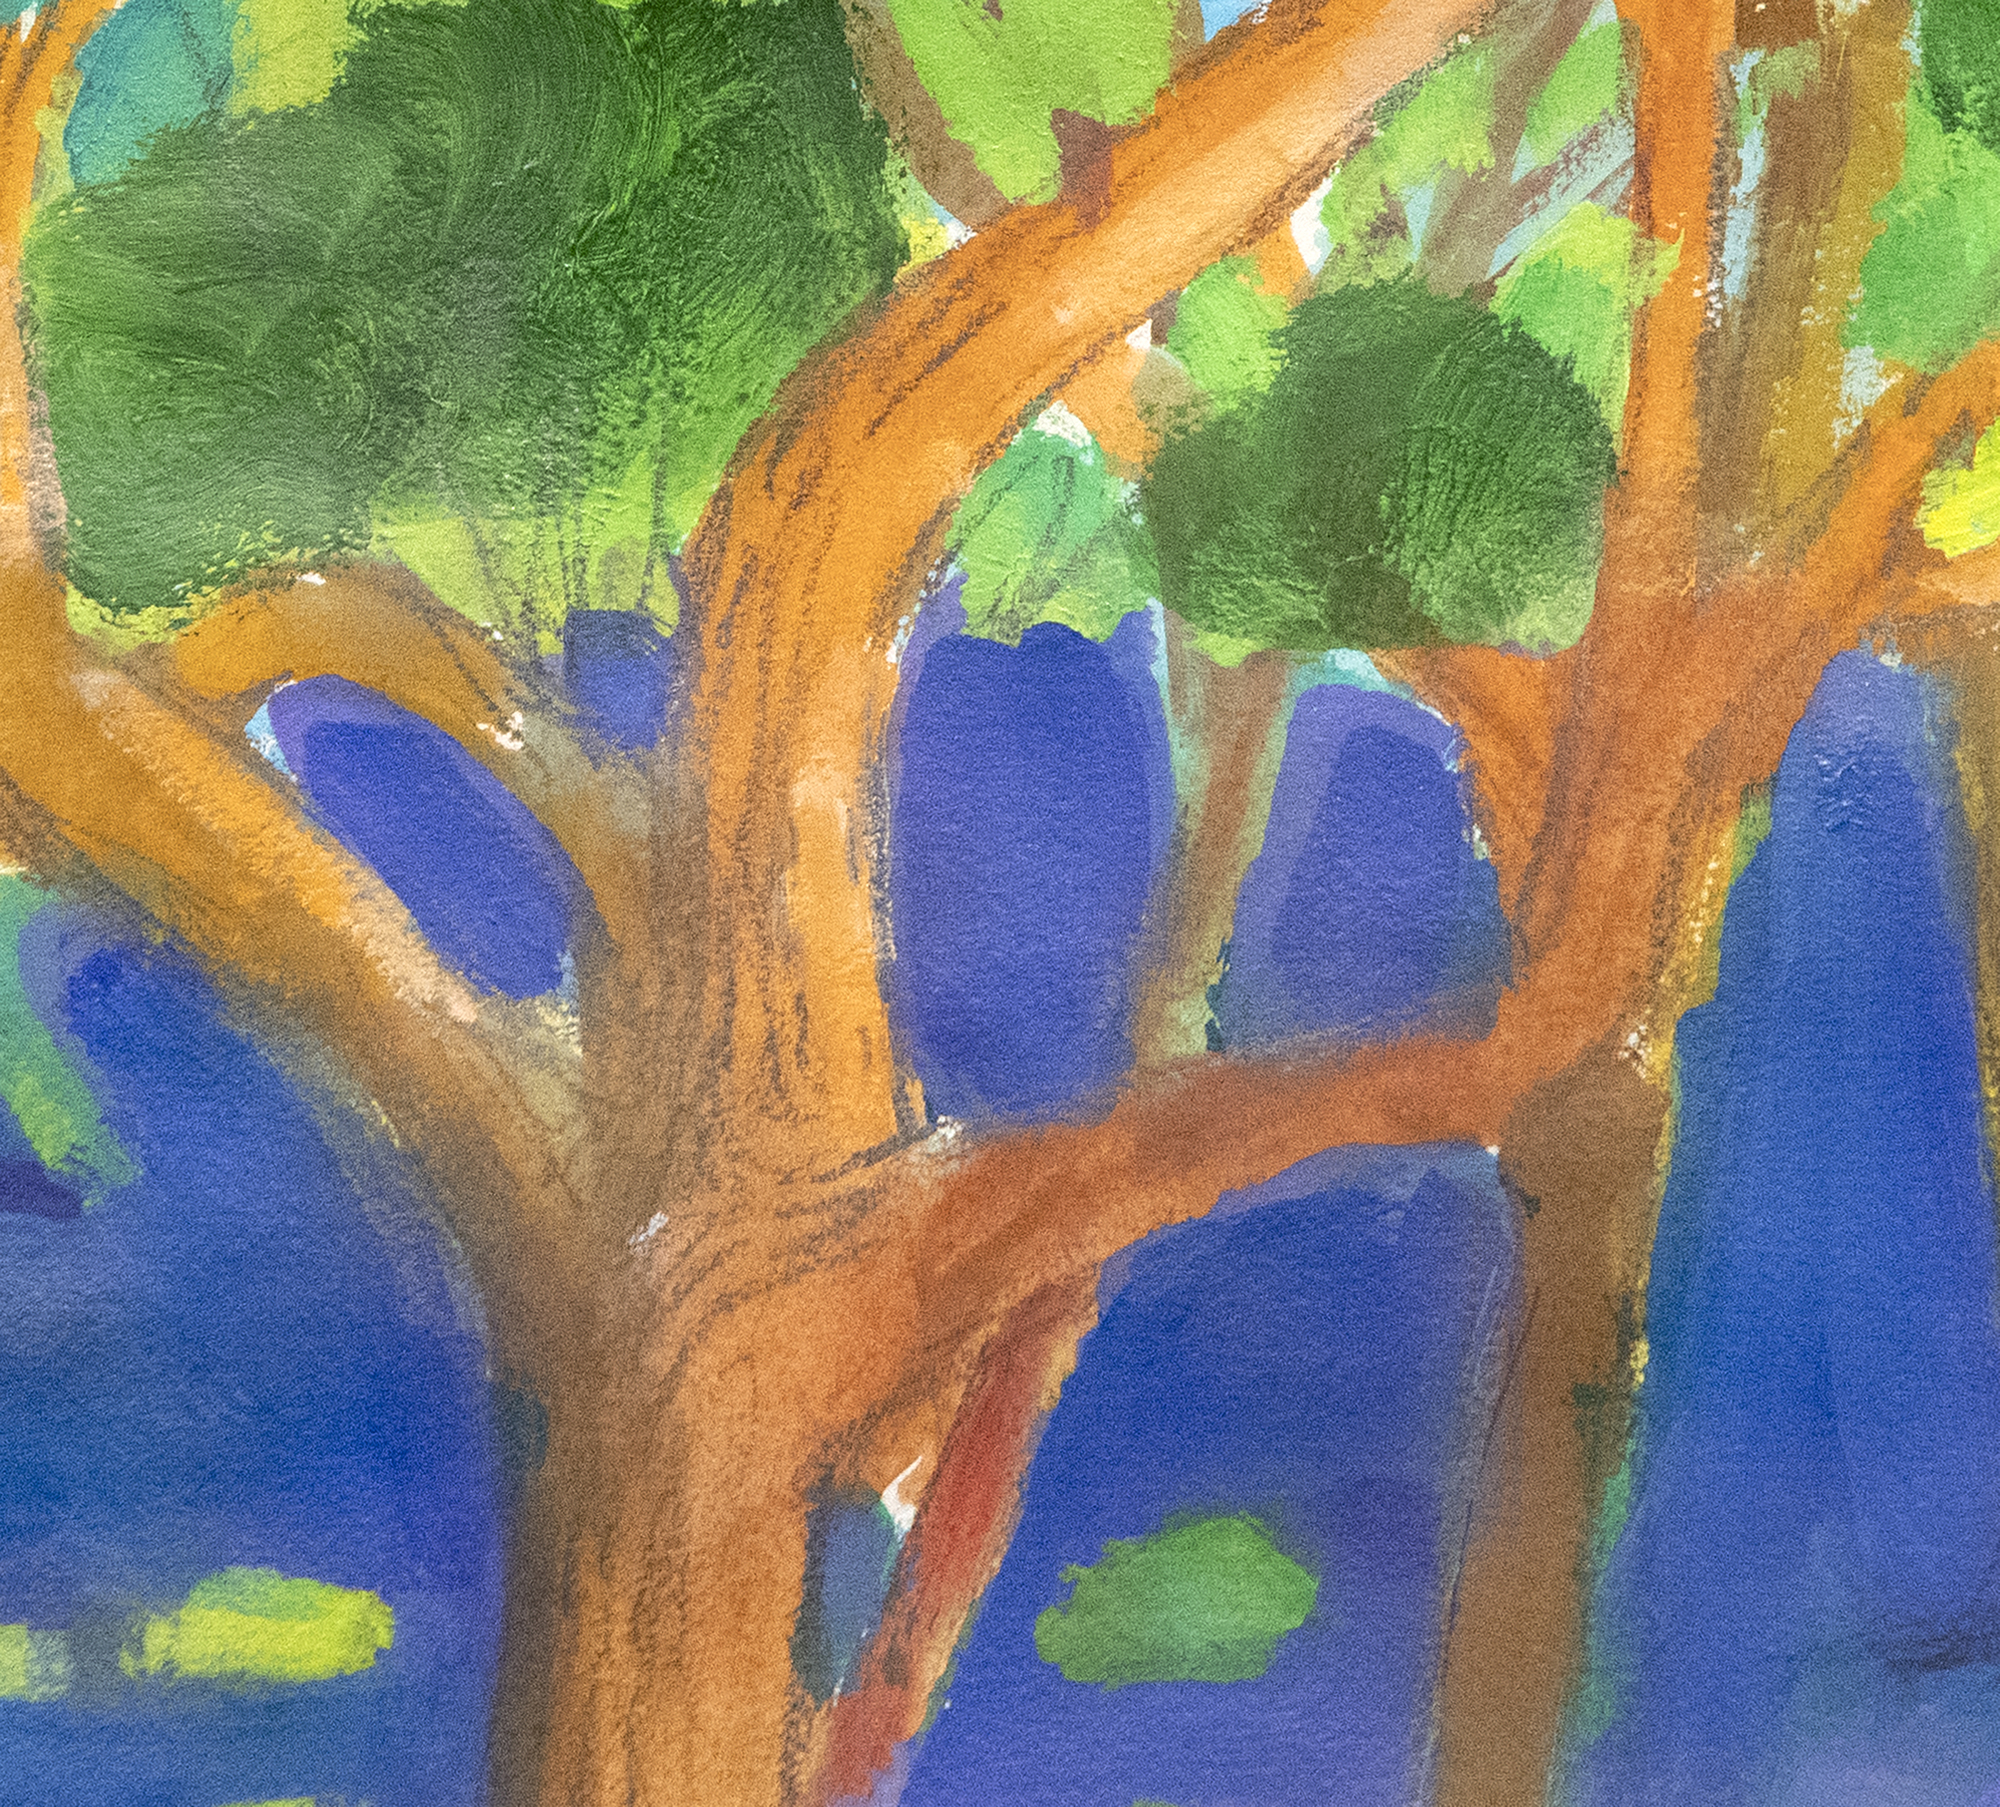 PAUL WONNER - Parque con figuras alrededor de un árbol - acrílico y lápiz sobre papel - 22 1/4 x 30 in.